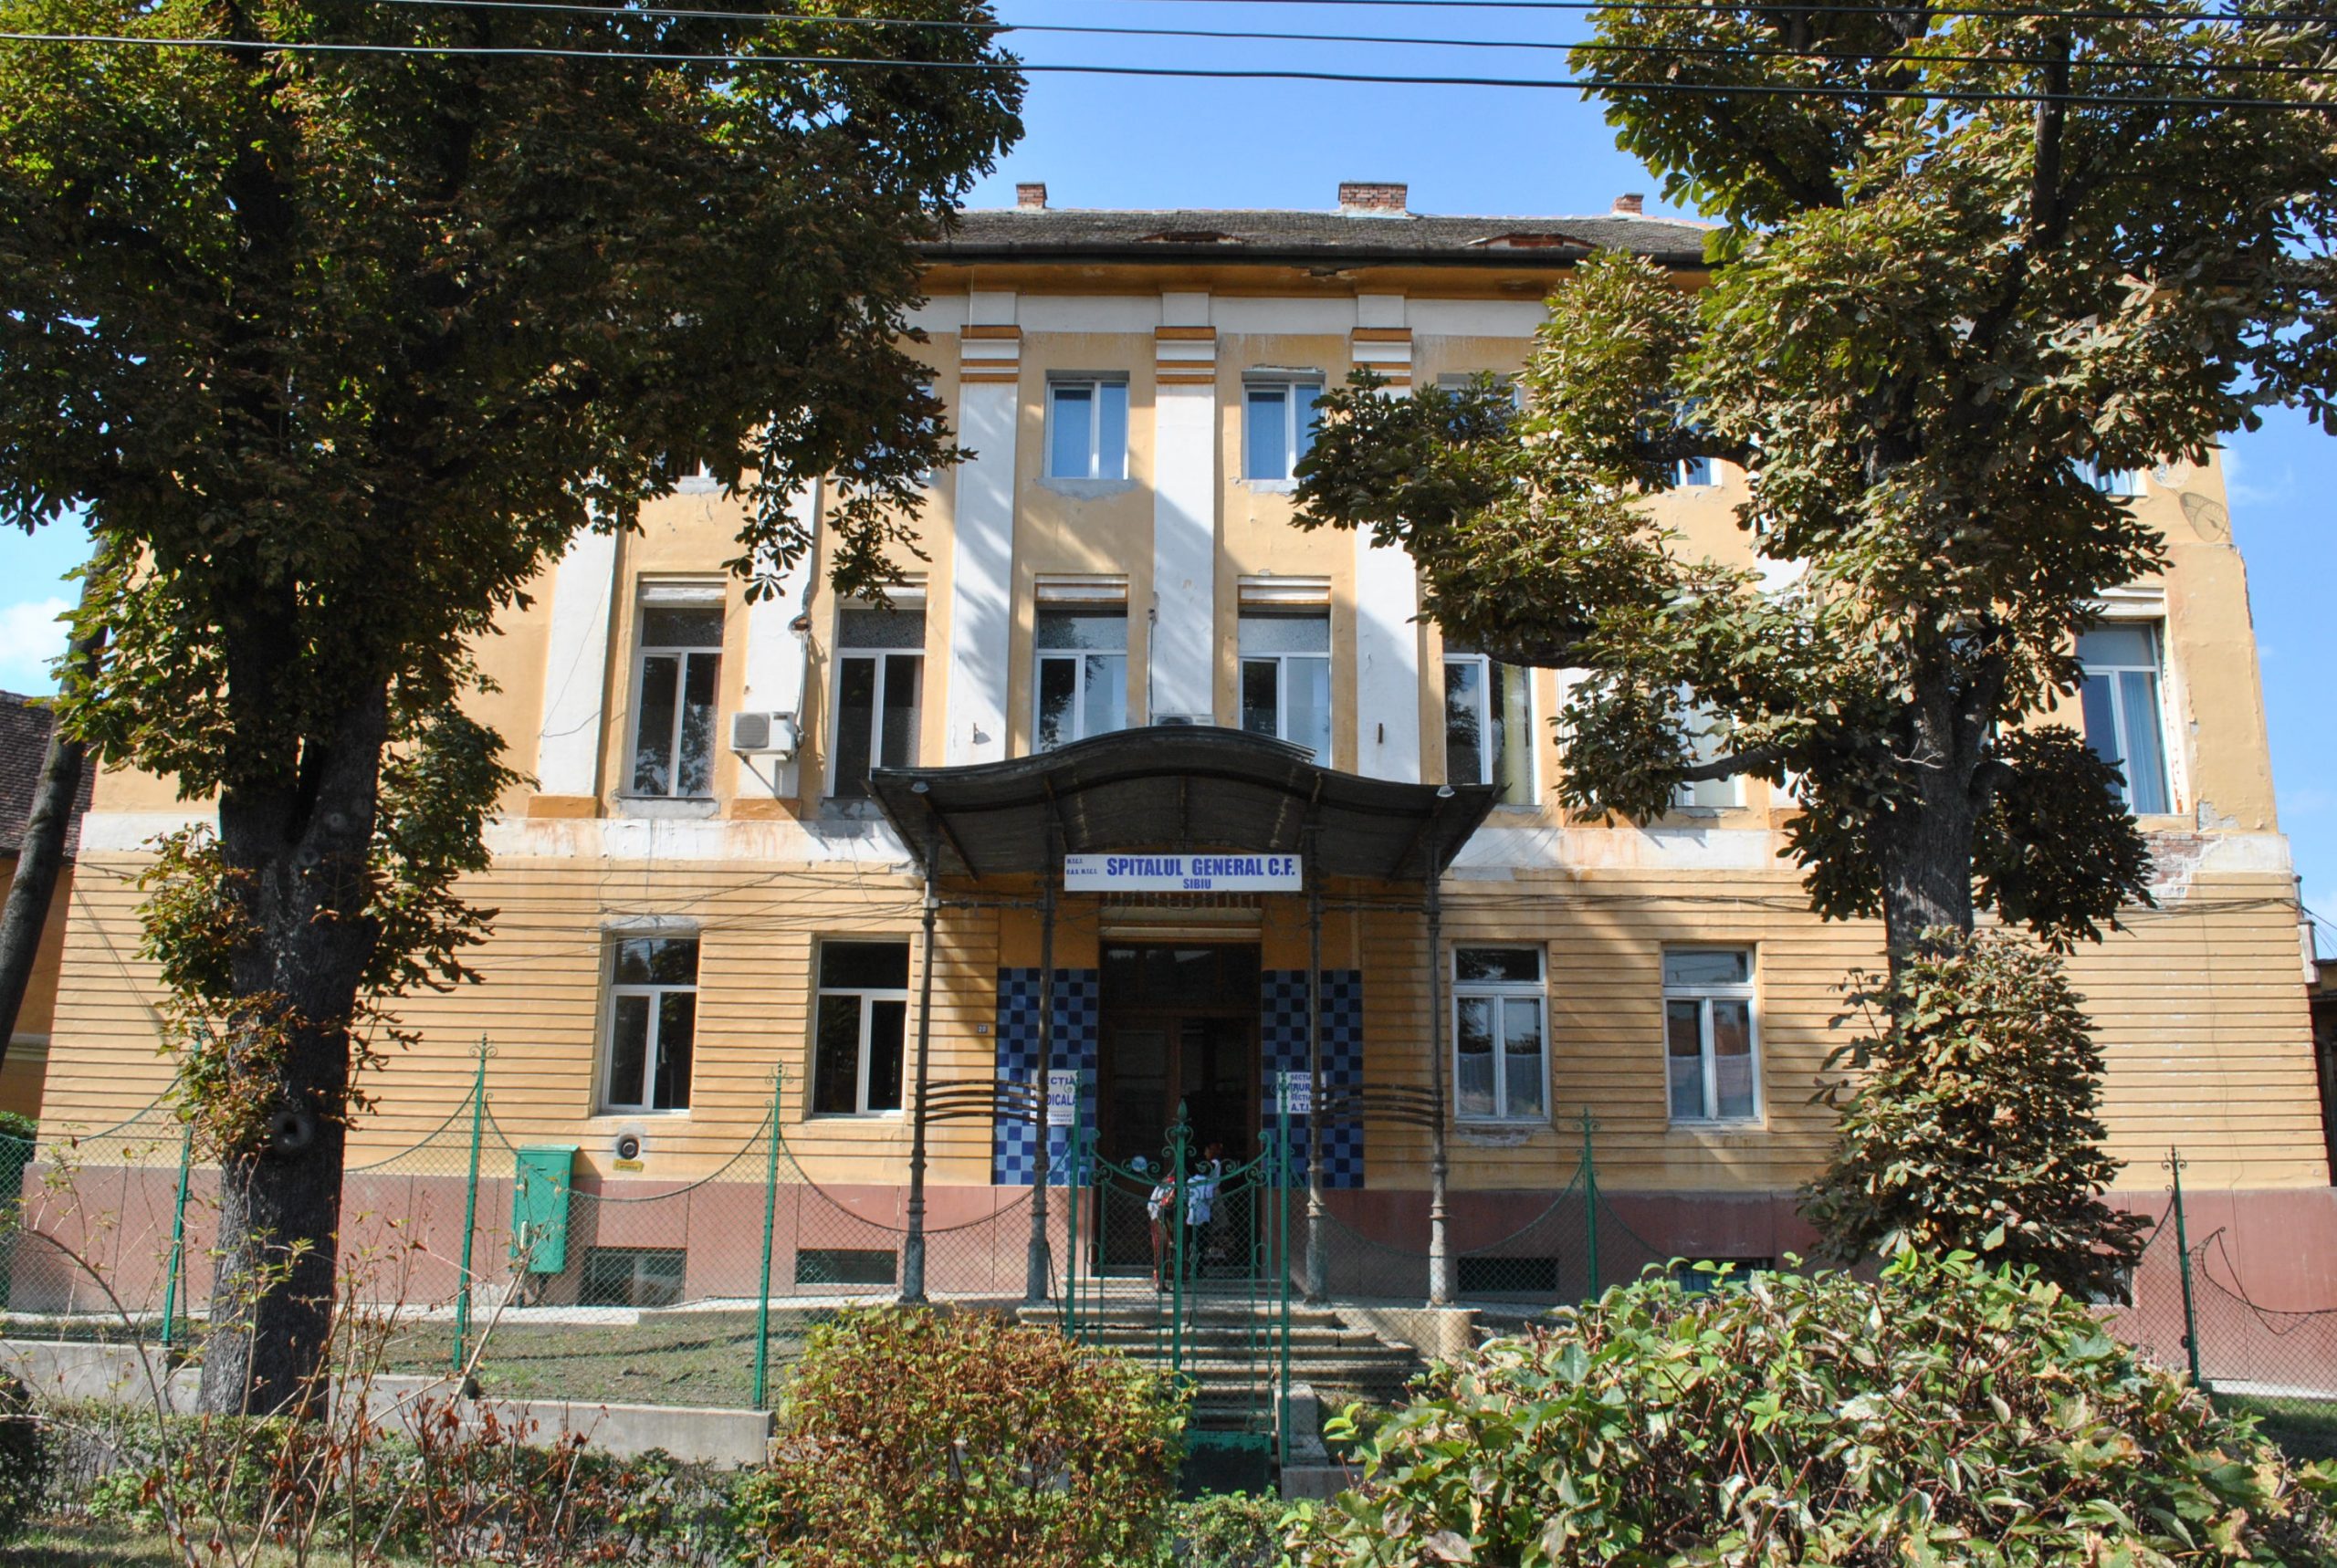 Sibiu Spitalul CFR scaled